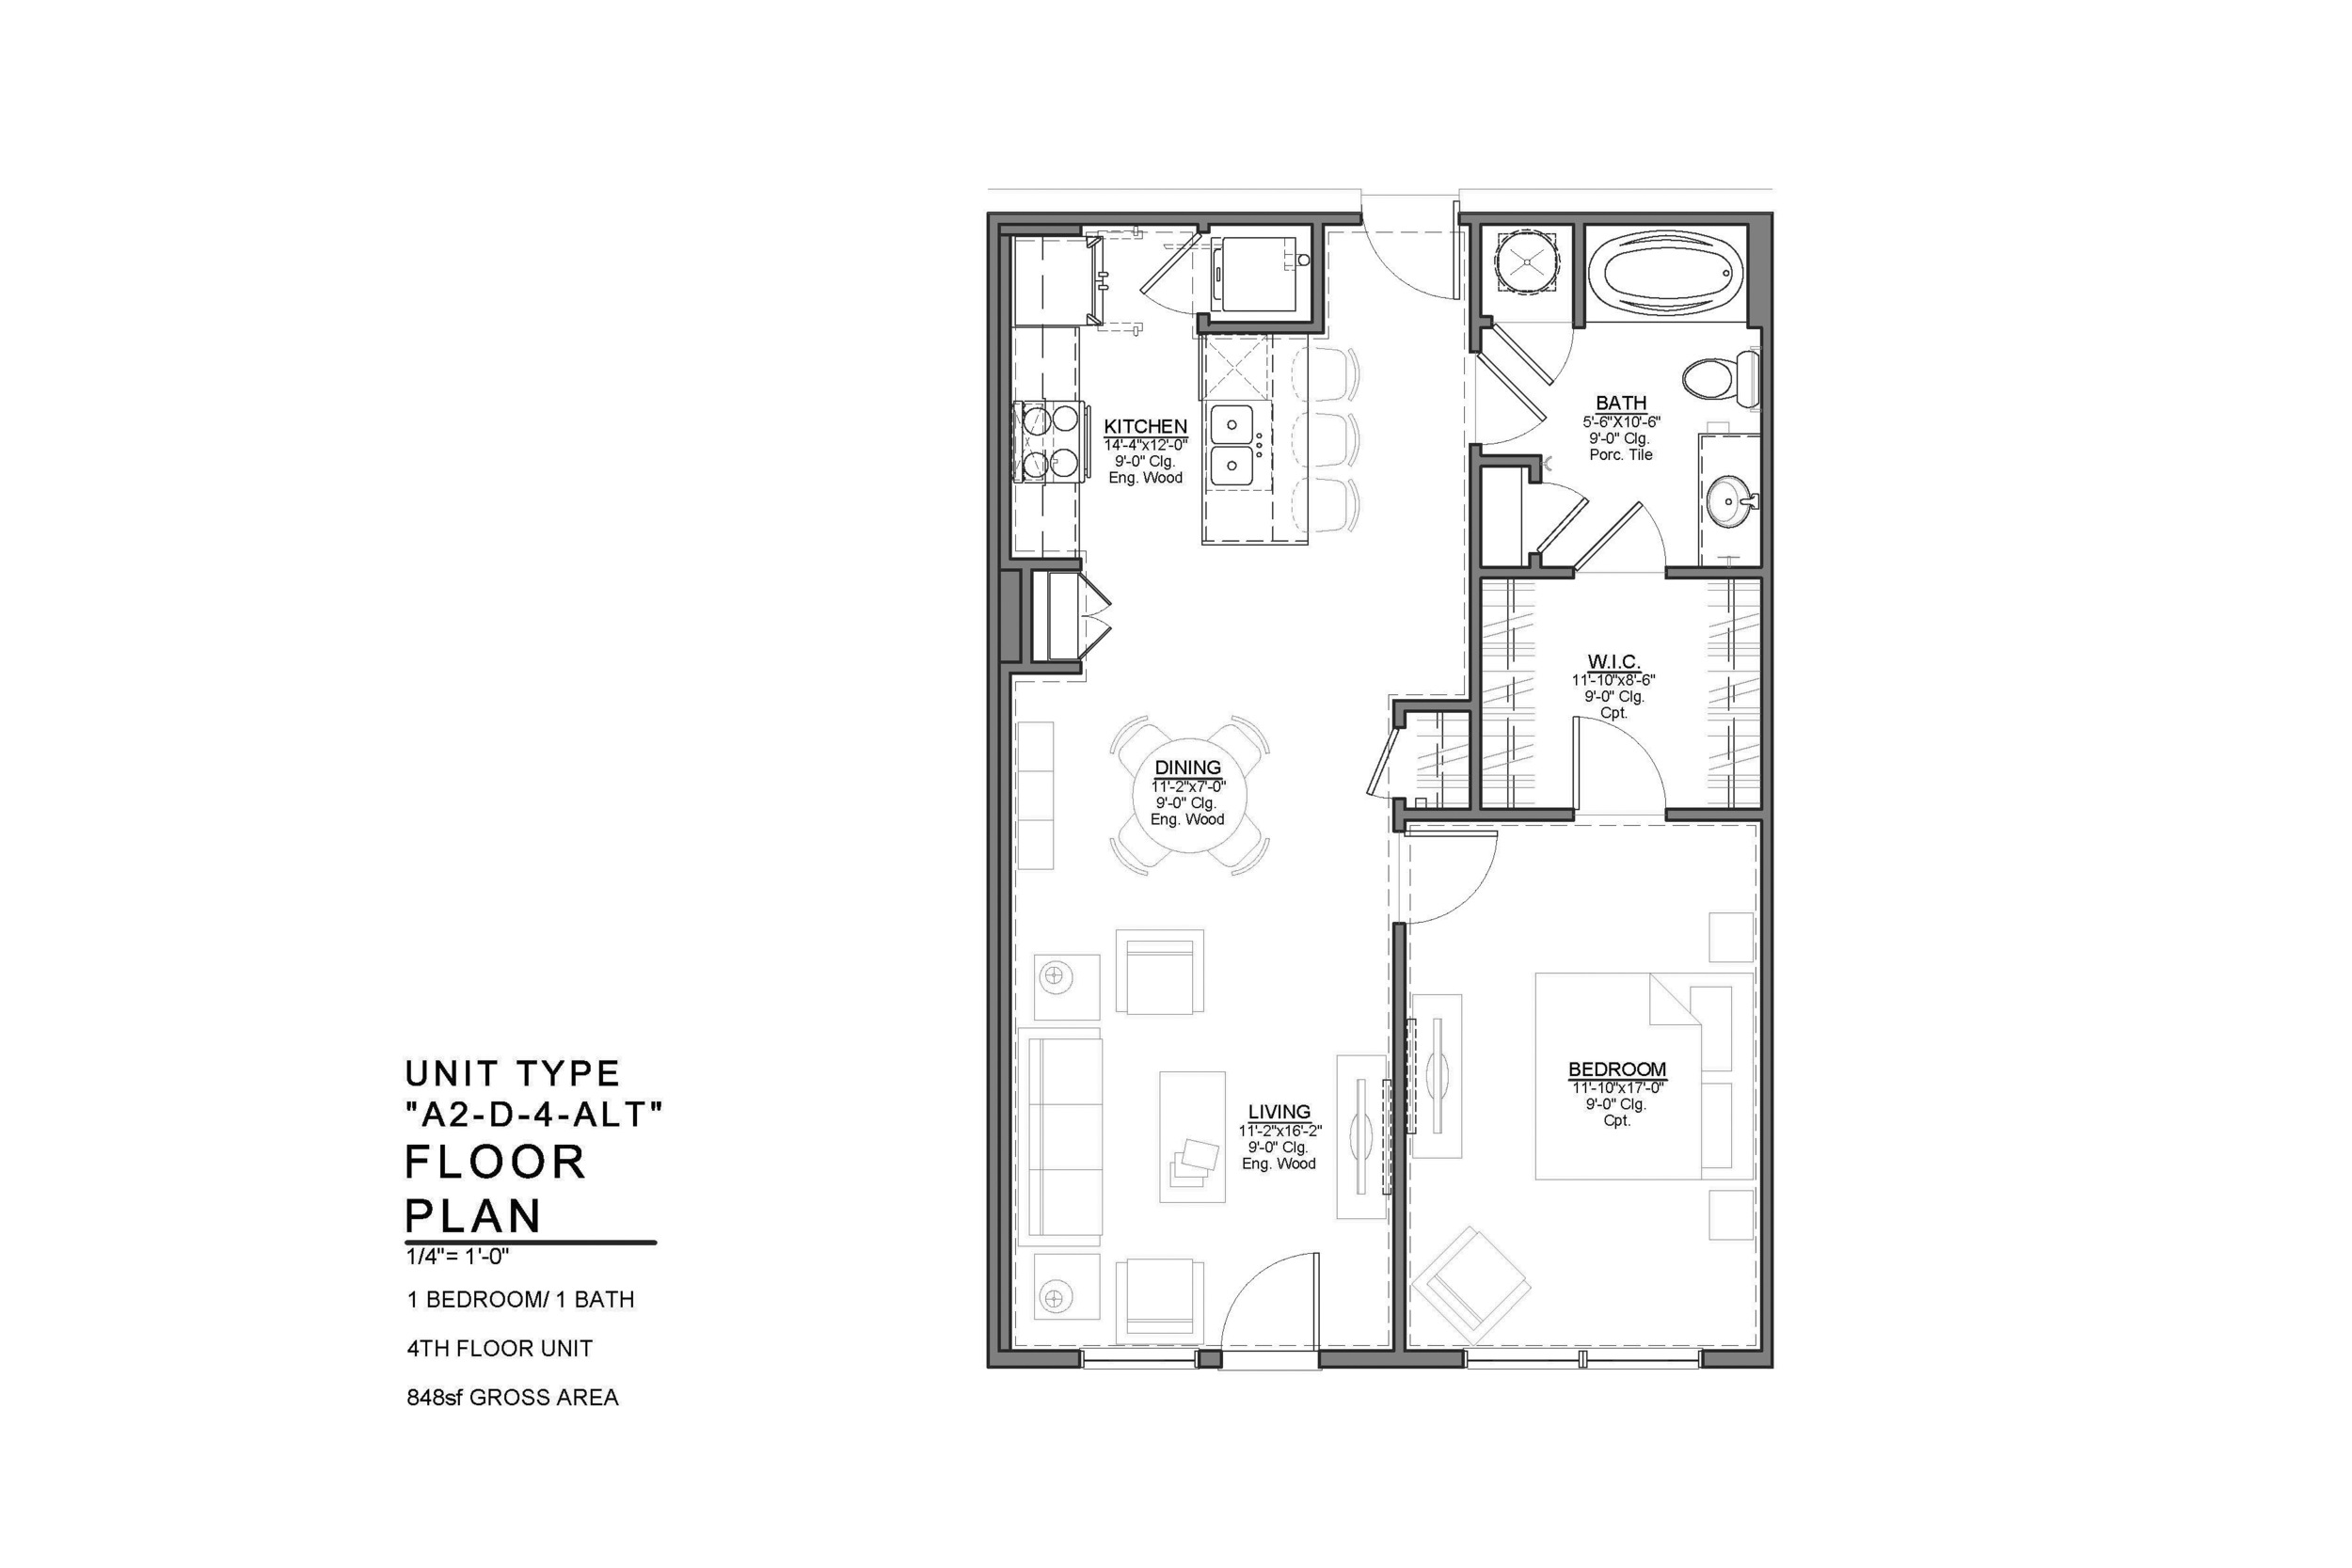 A2-D-4-ALT FLOOR PLAN: 1 BEDROOM / 1 BATH